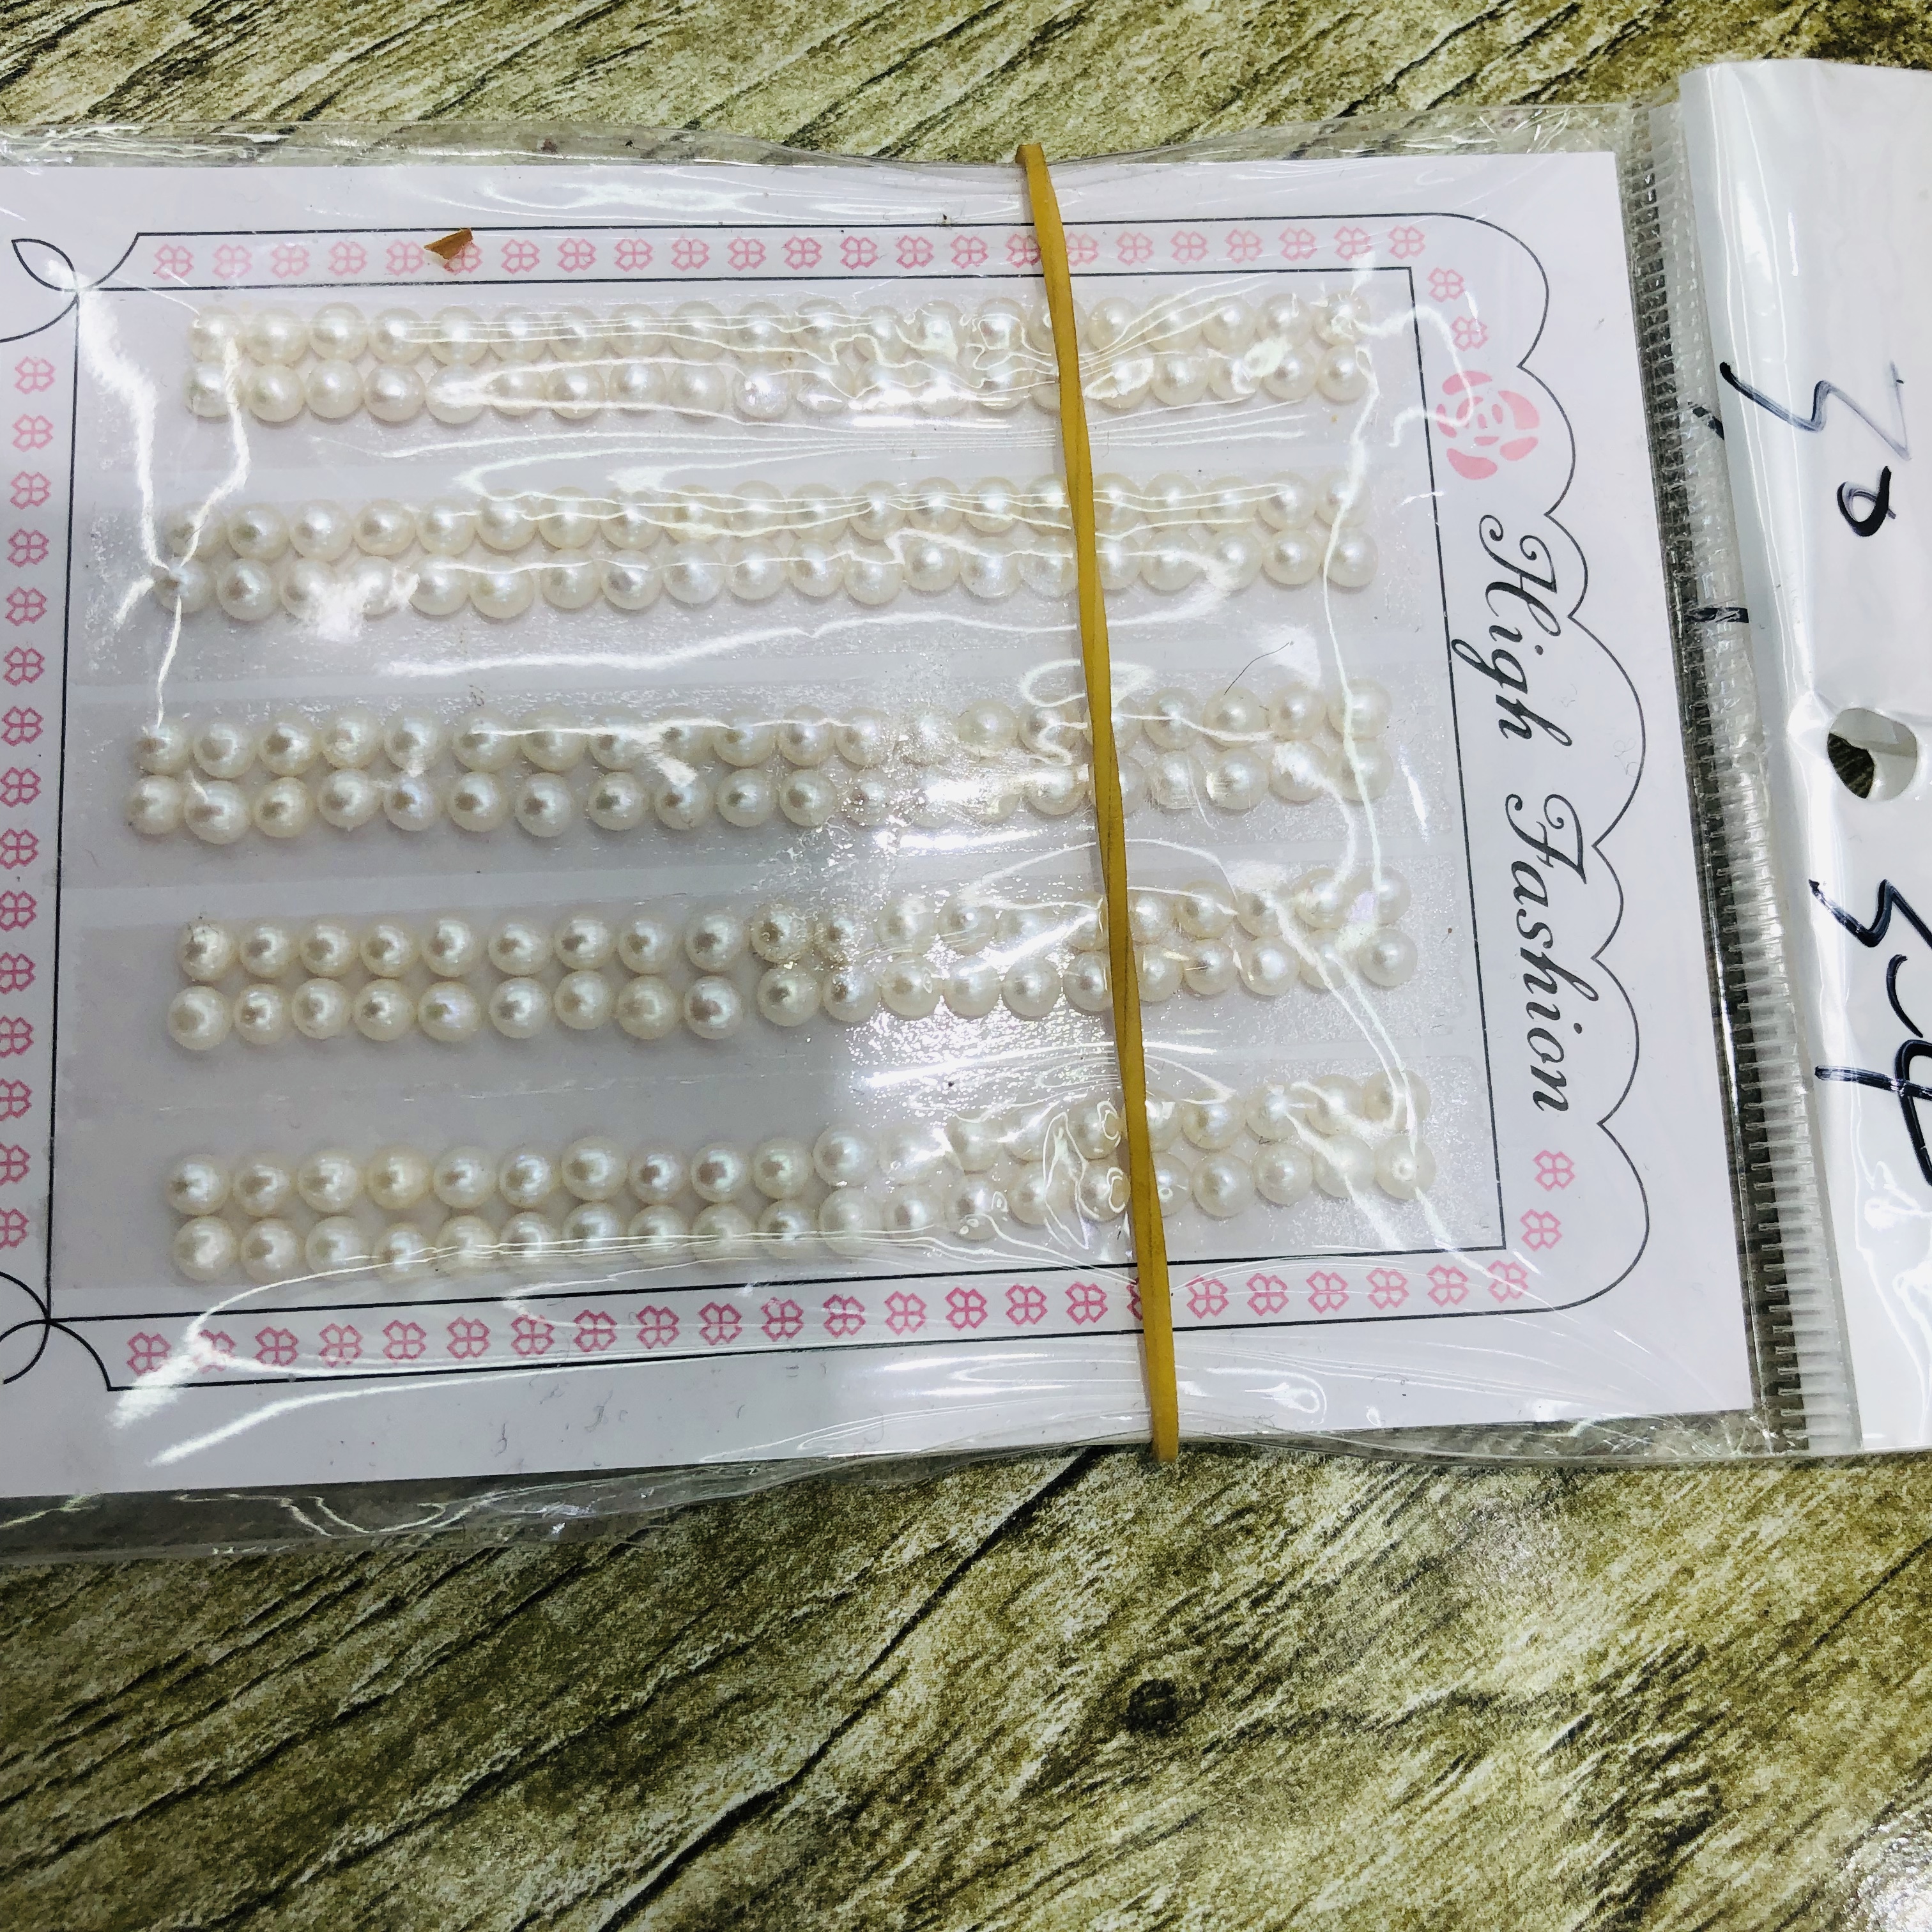 现货天然南洋贝壳珍珠全孔3-4mm白色贝珠散珠批发diy饰品配件